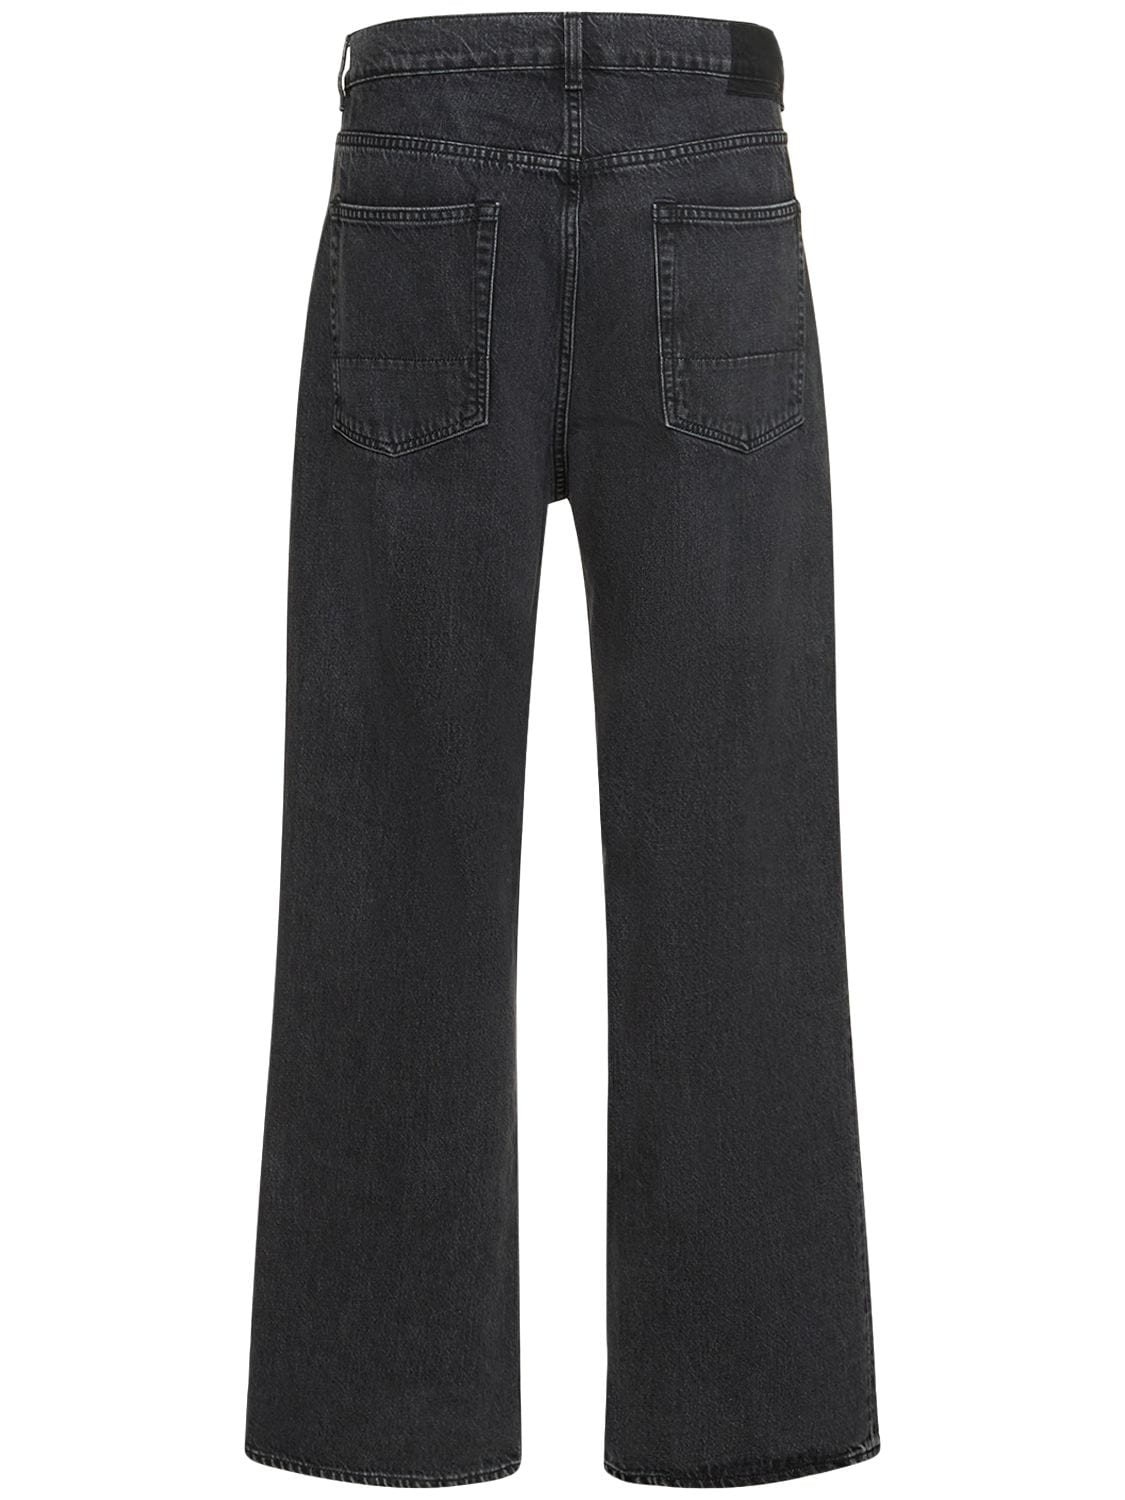 Shop Our Legacy 25.5cm Third Cut Cotton Denim Jeans In Supergrey